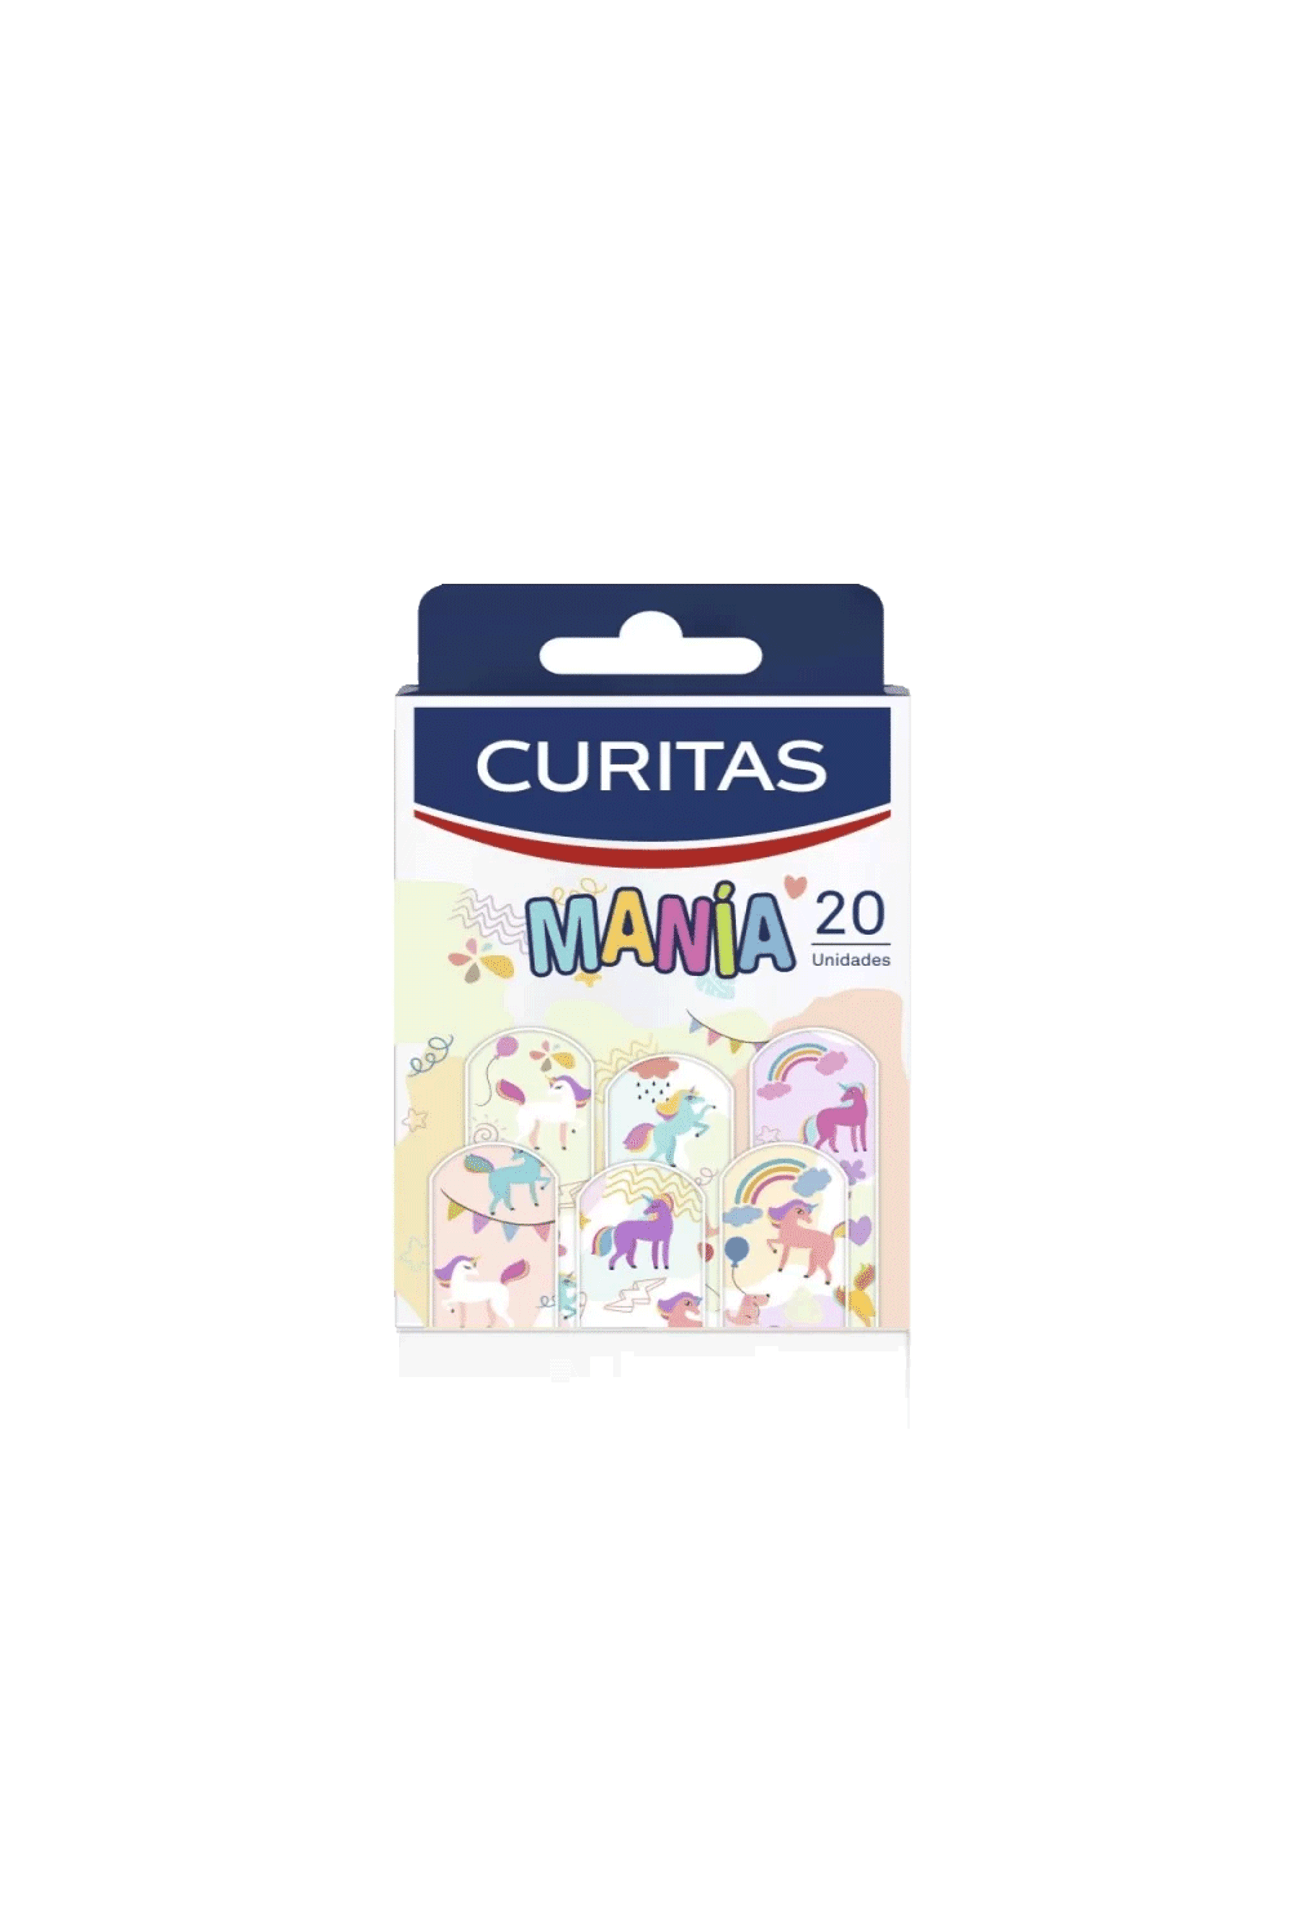 Curitas-Curitas-Mania-Unicornio-x-20-unid-7702003010798_img1